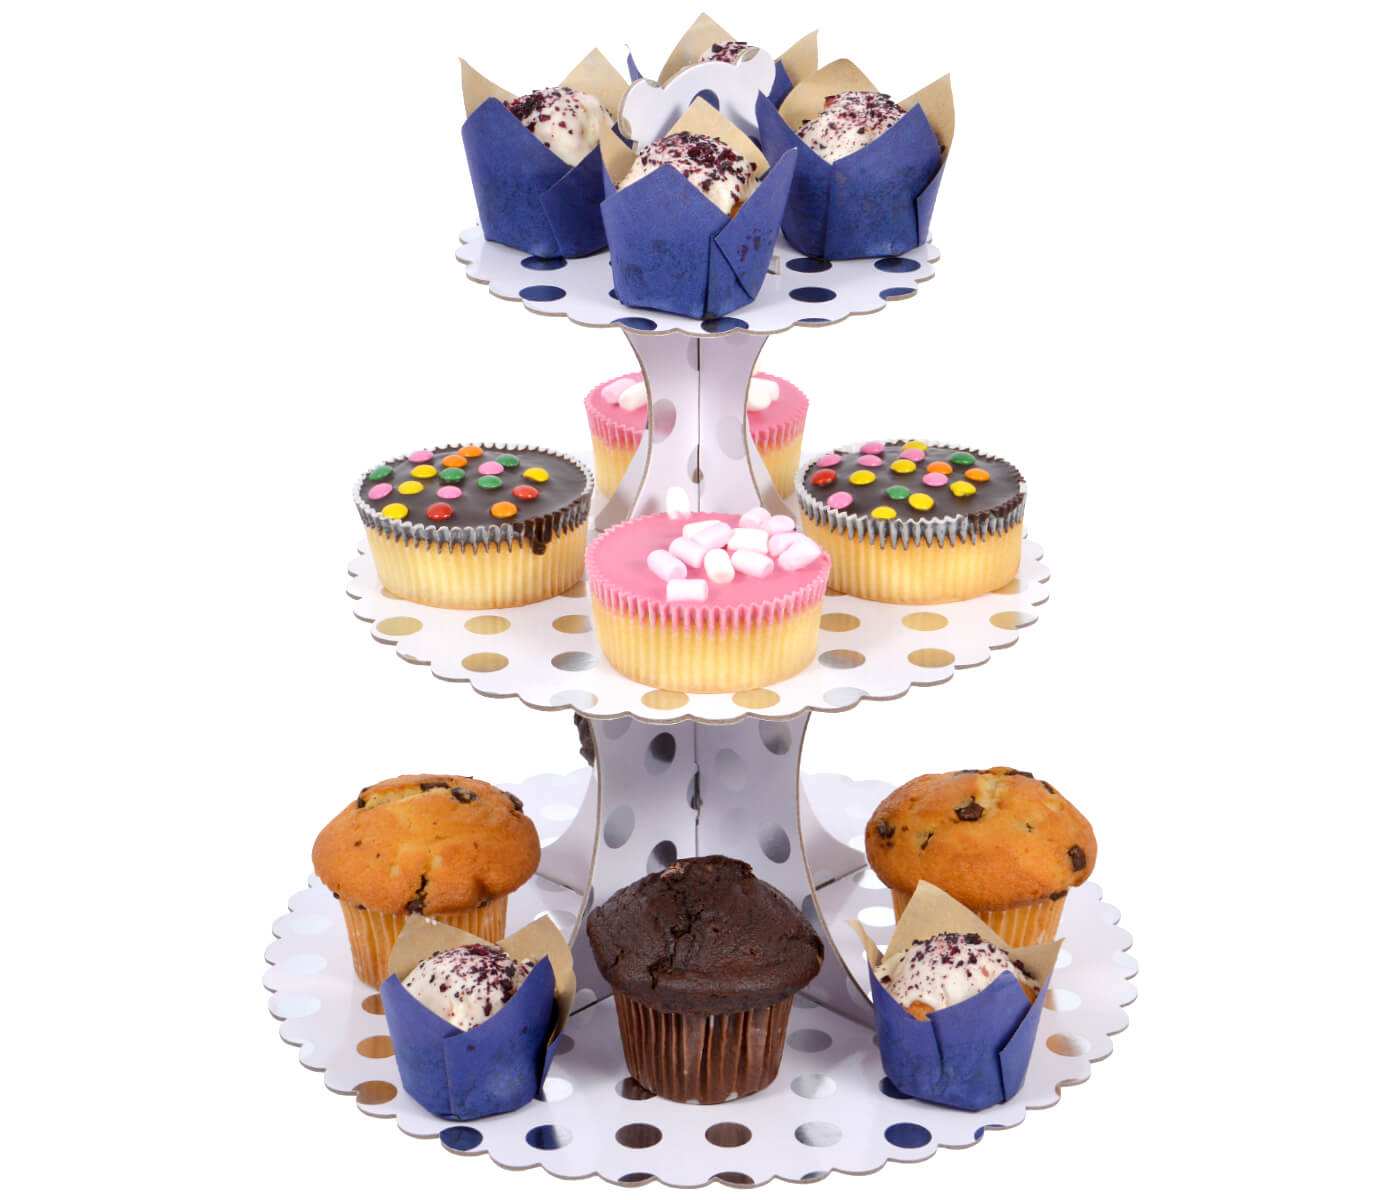 Présentoir à Cupcakes en Carton Support Muffin à 3 Étages pour Dragées Bonbonnière Décoration pour Fêtes Baptême Baby Shower Anniversaire